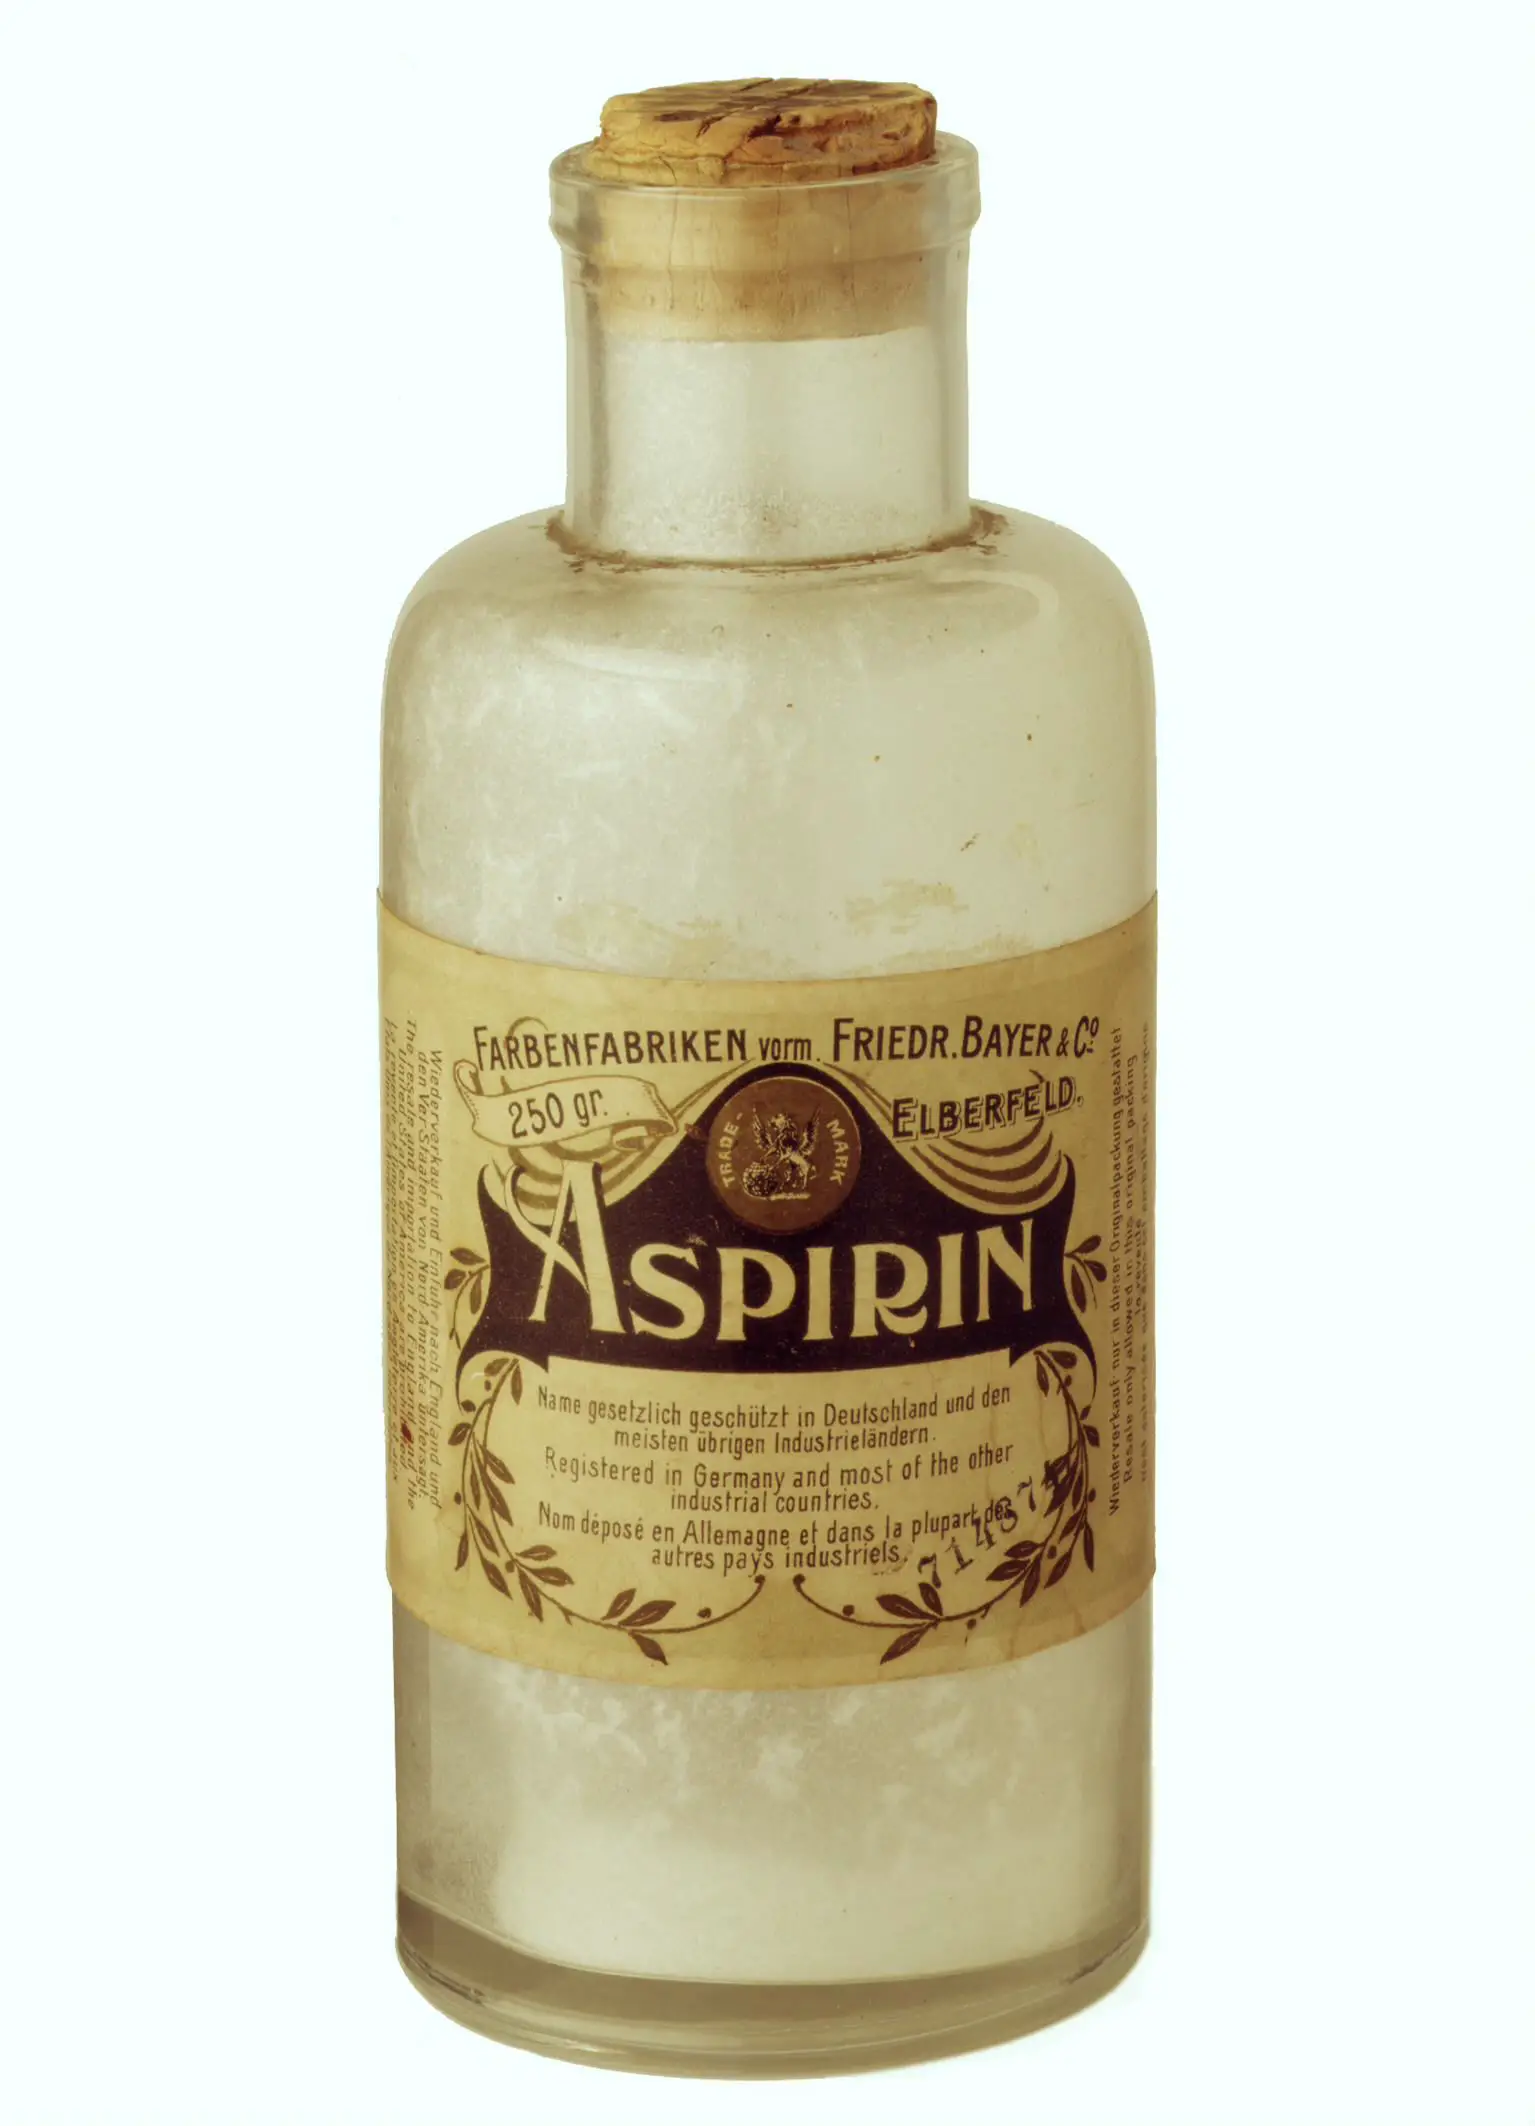 Felix Hoffmann y la historia de la aspirina, la droga maravillosa que nació del deseo de un hijo de ayudar a su padre enfermo